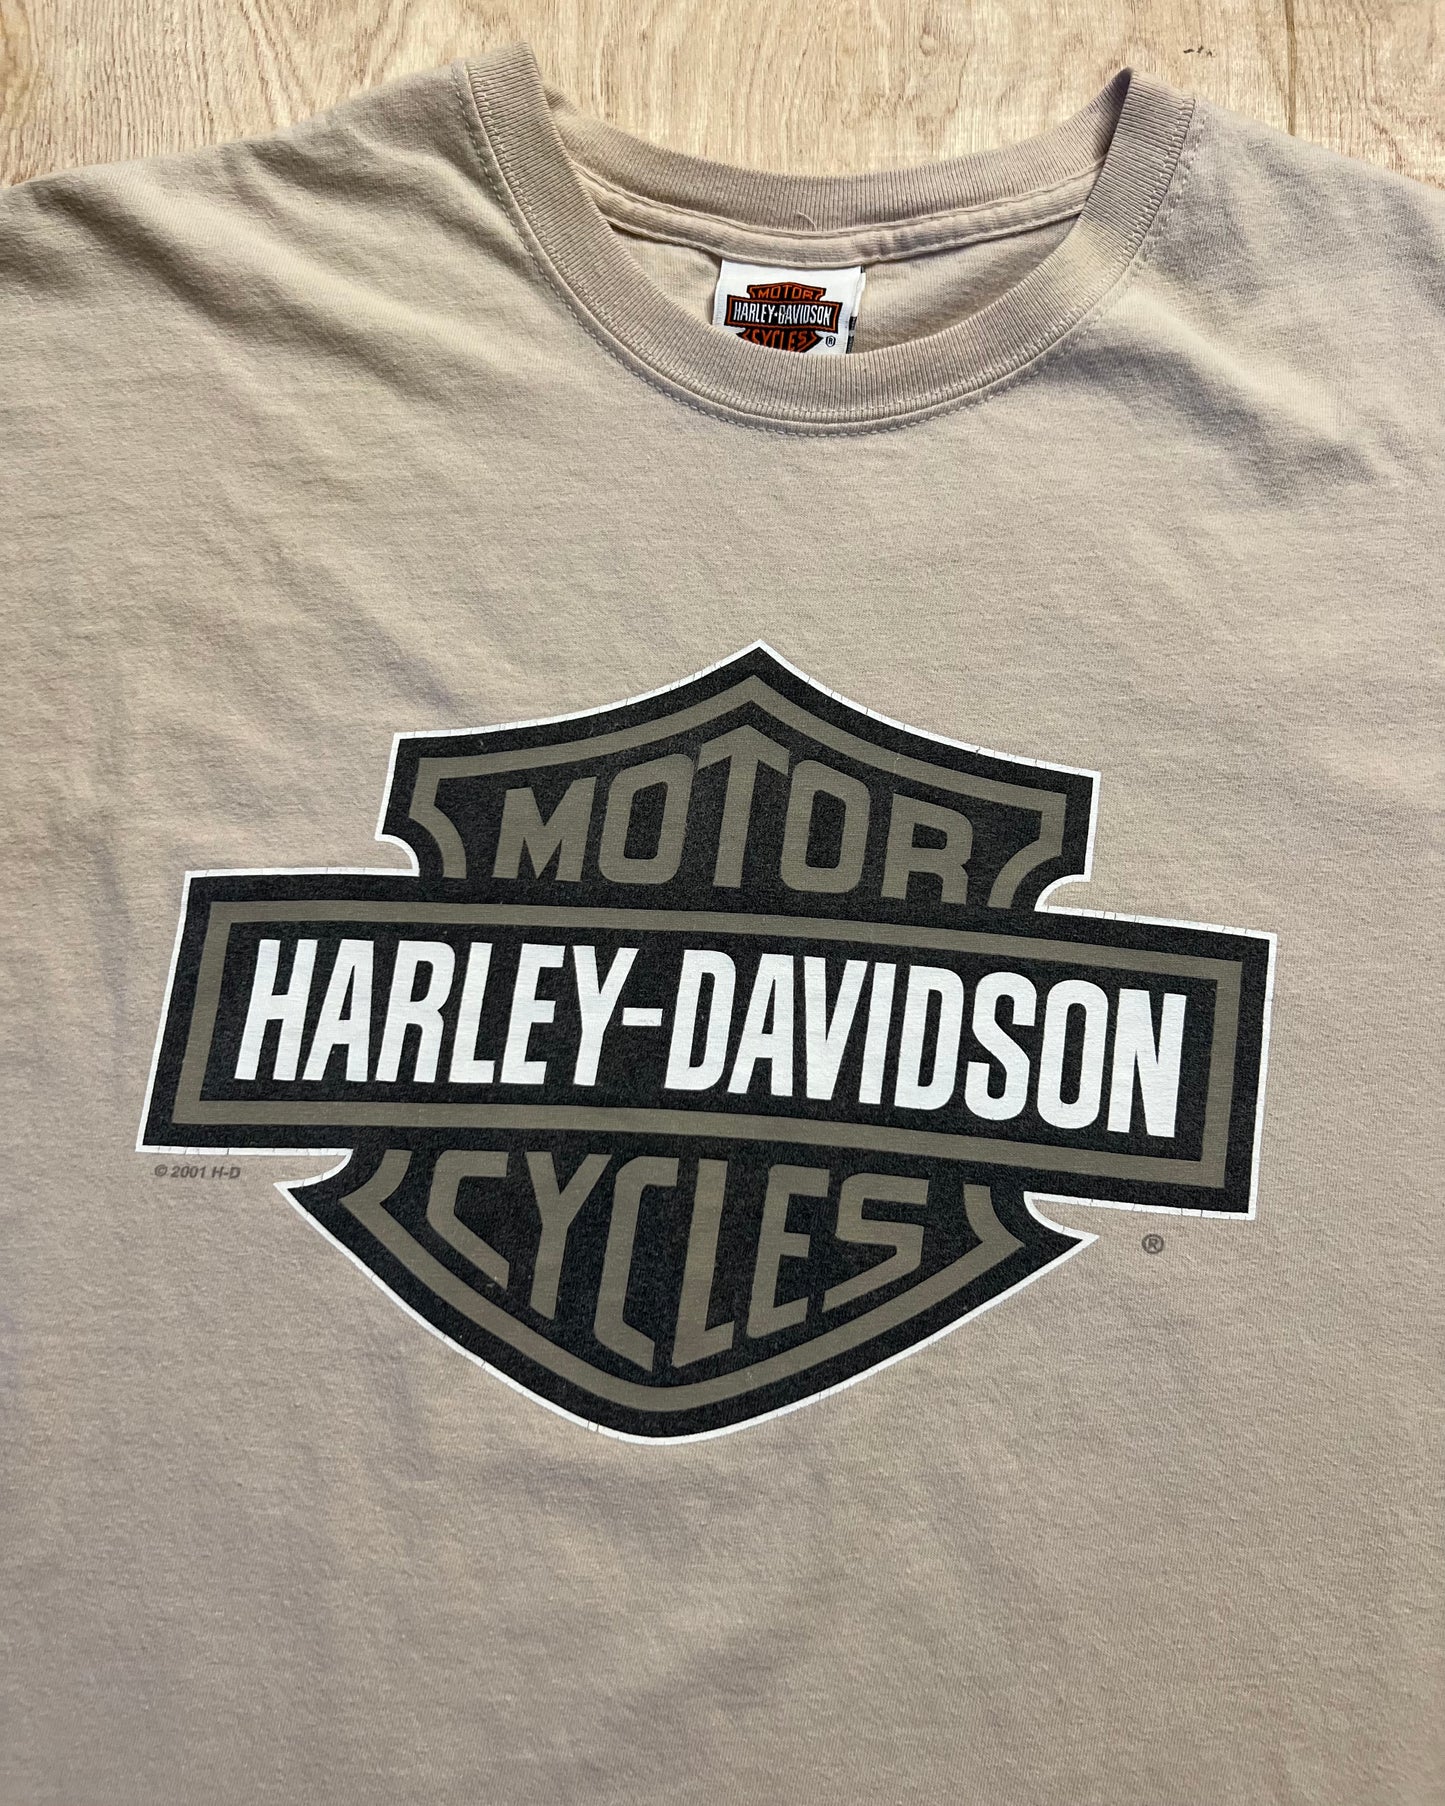 2001 Harley Davidson St Augustine, Florida T-Shirt